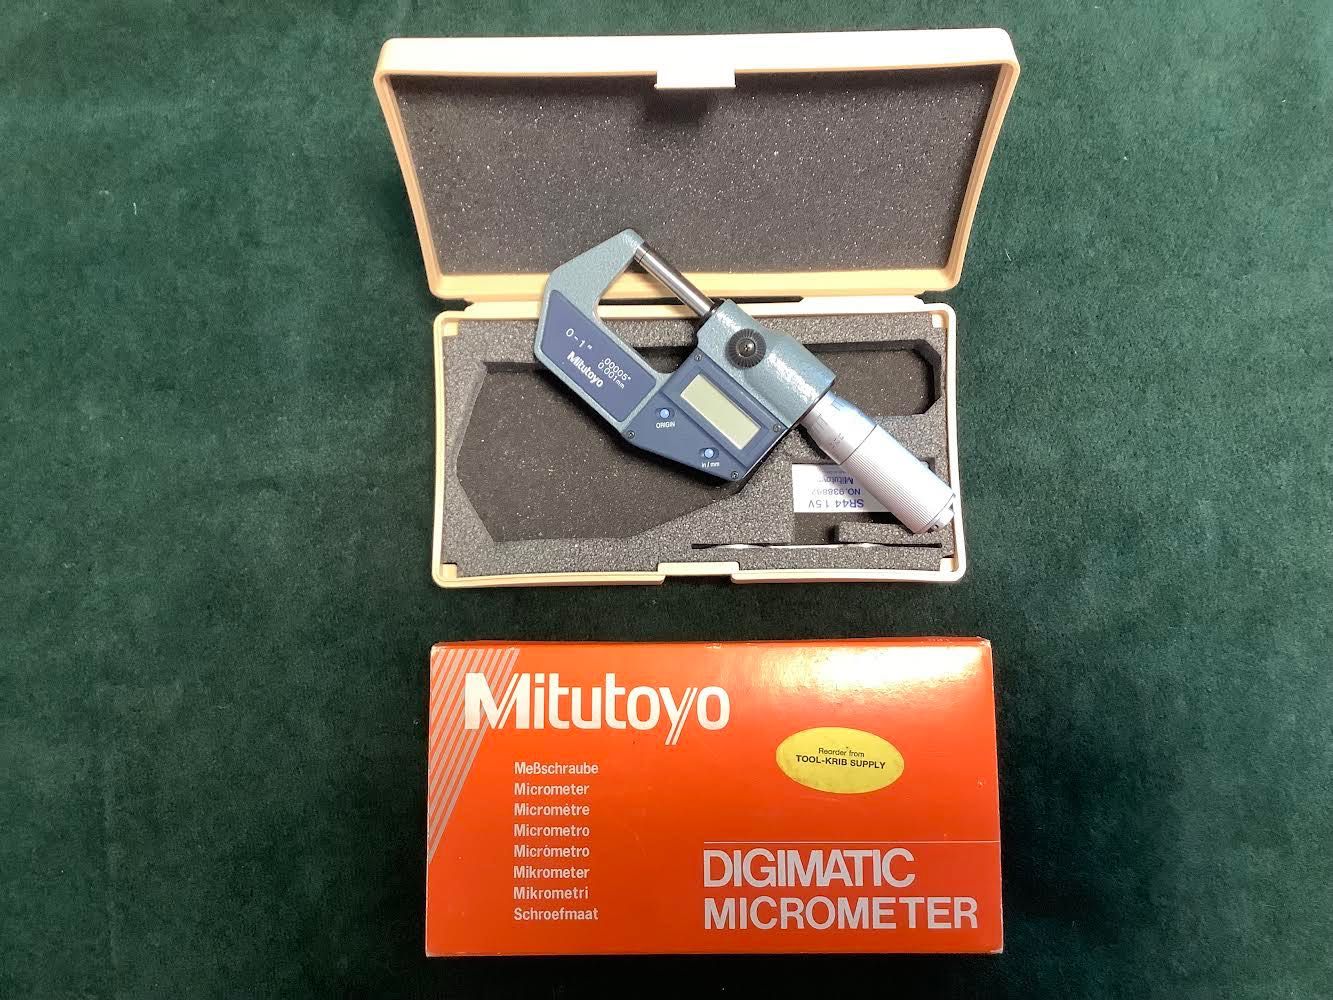 Micrometer digimatic